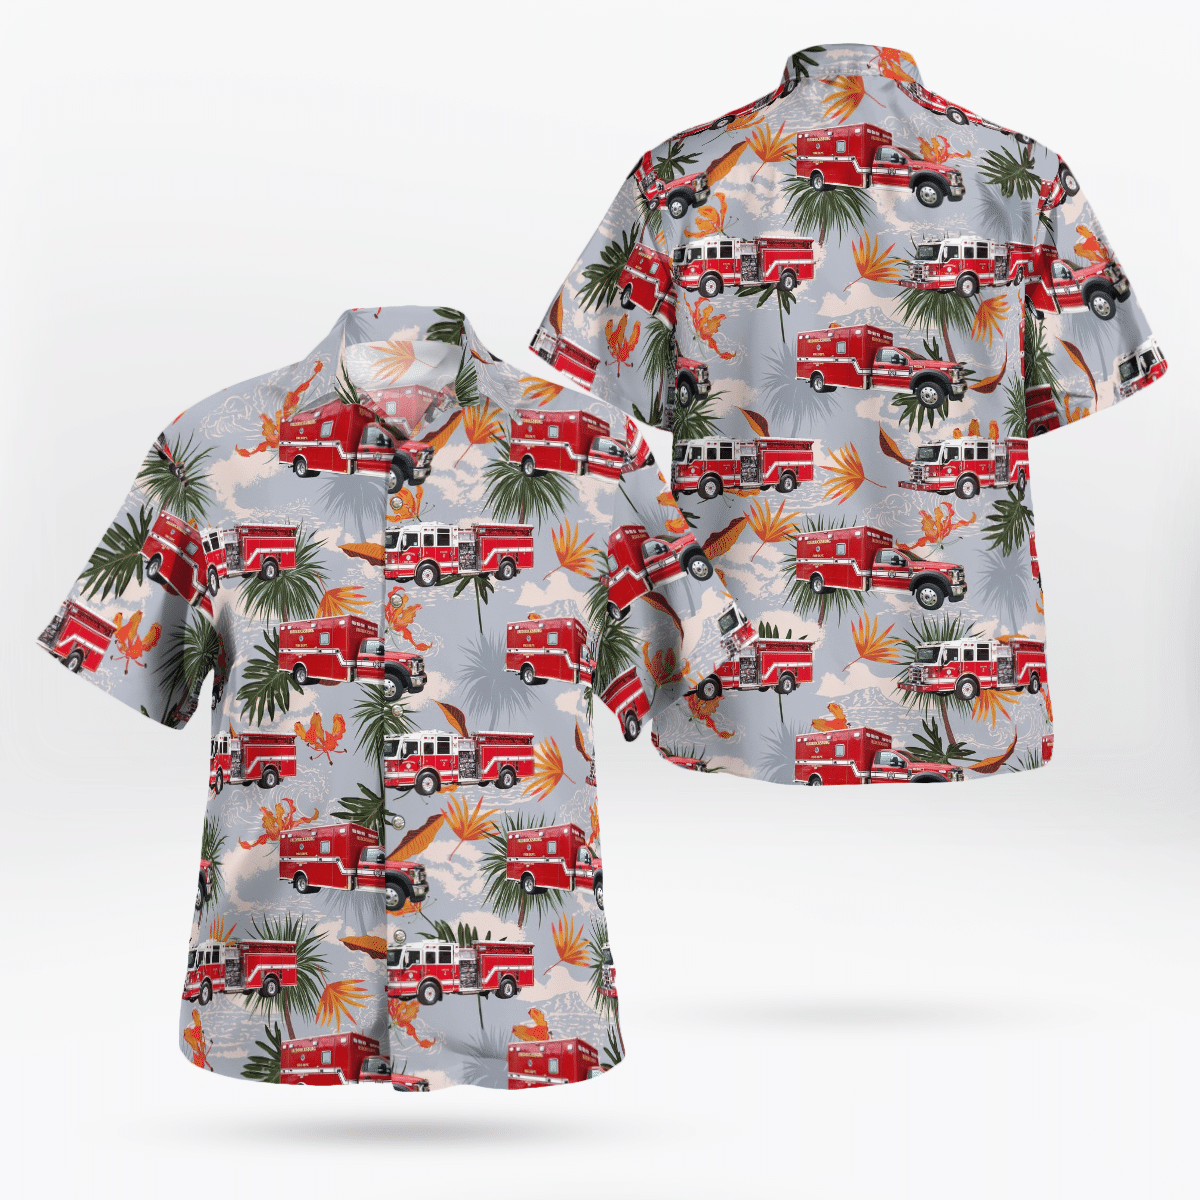 Best Hawaiian shirts 2022 226